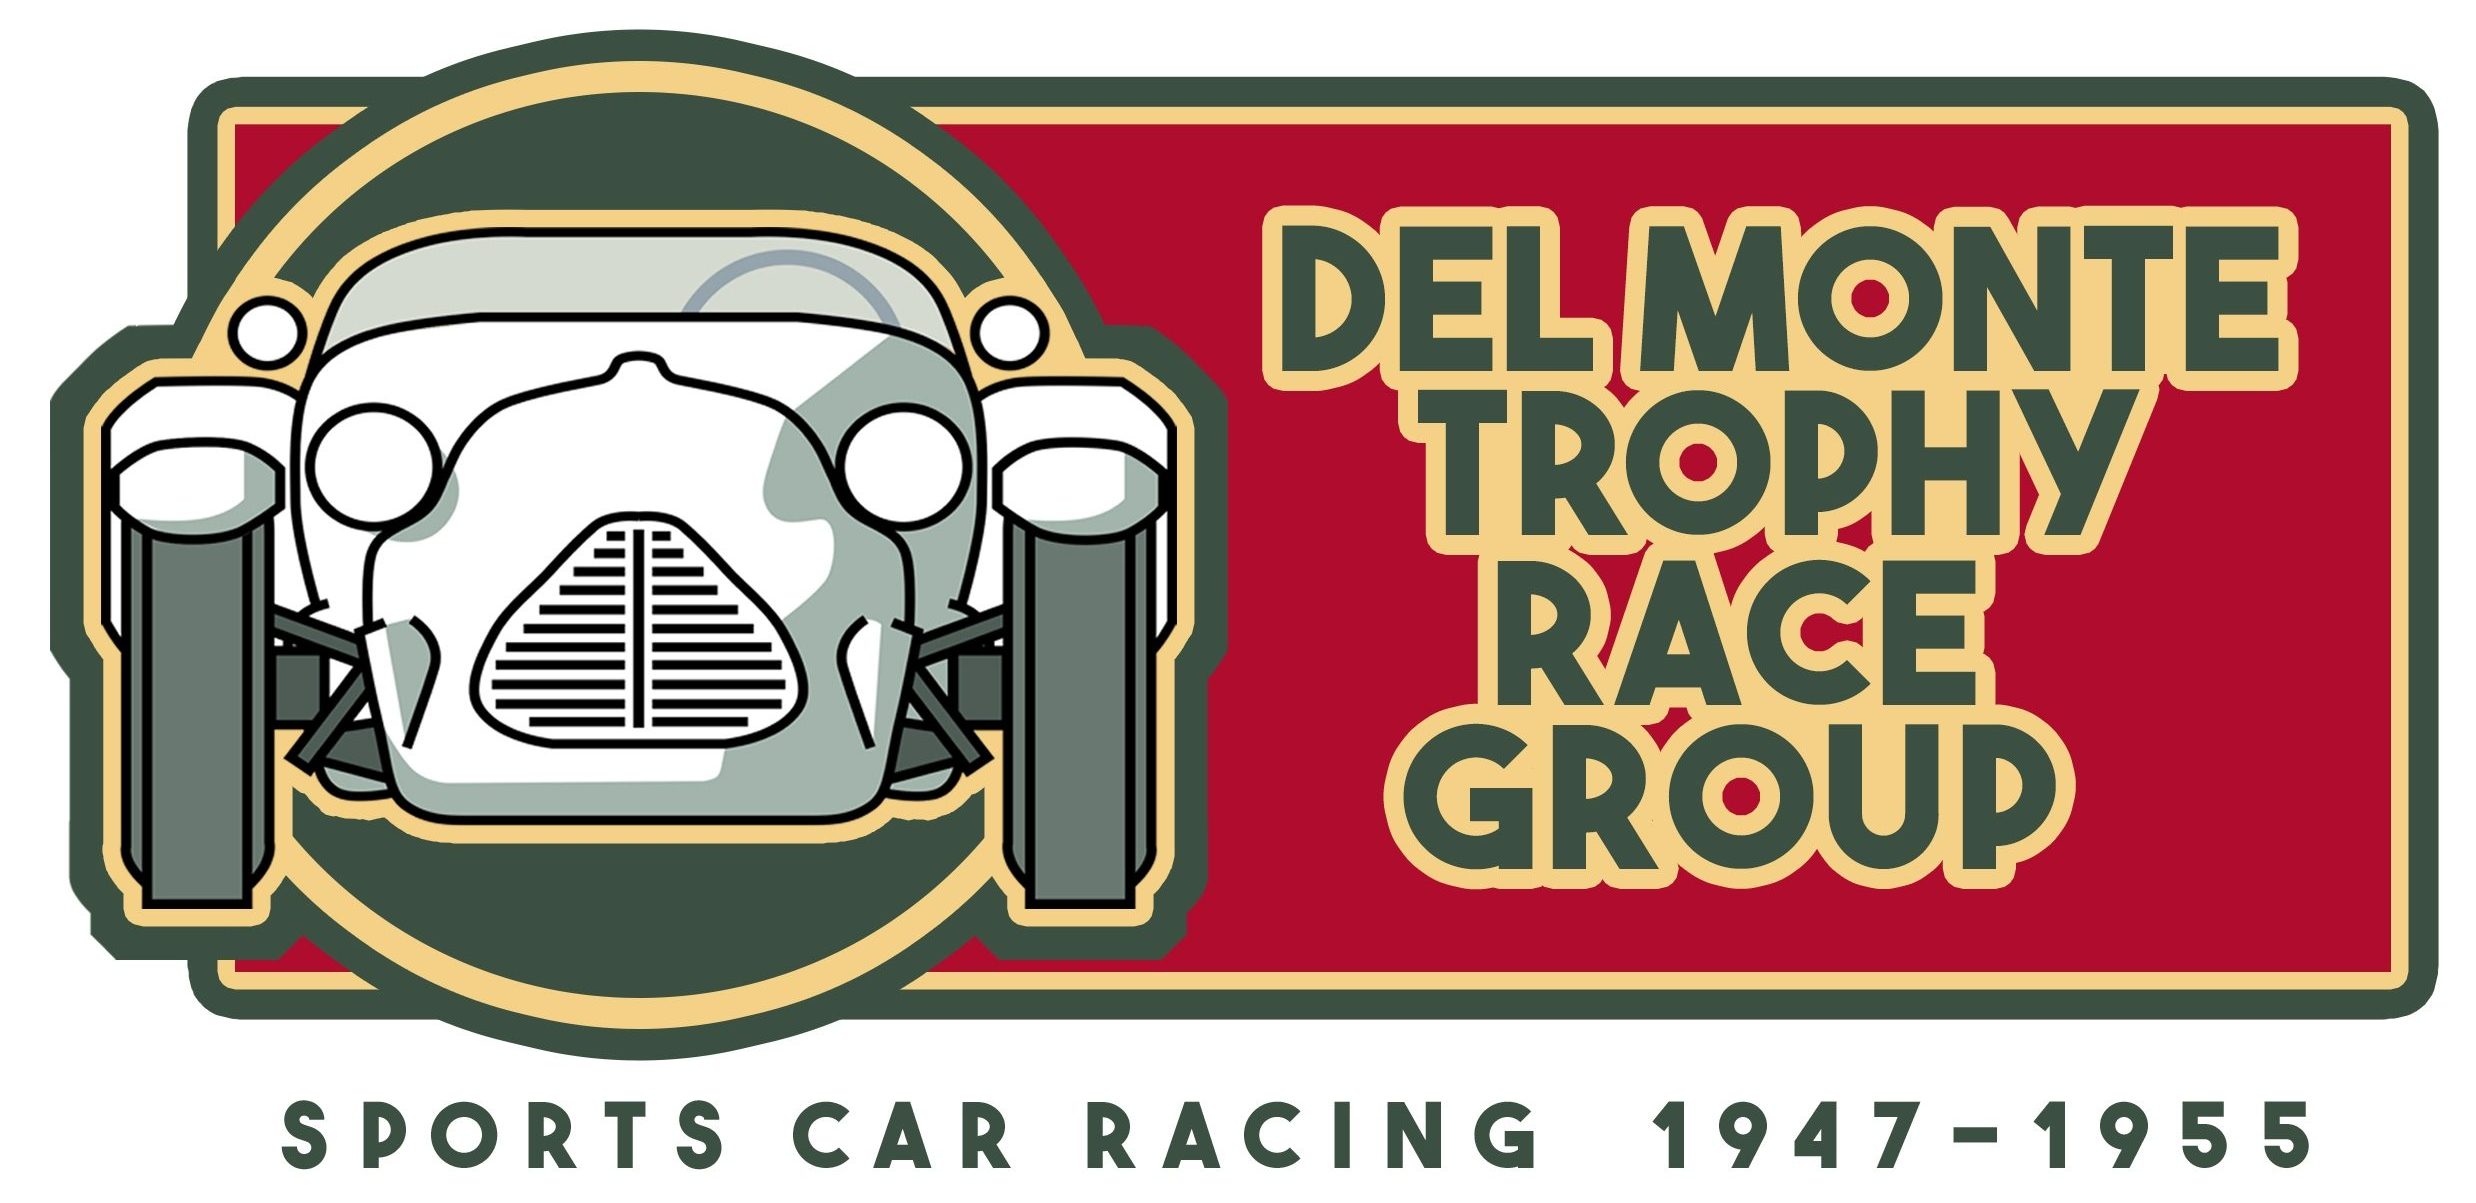 Del Monte Trophy Race Group